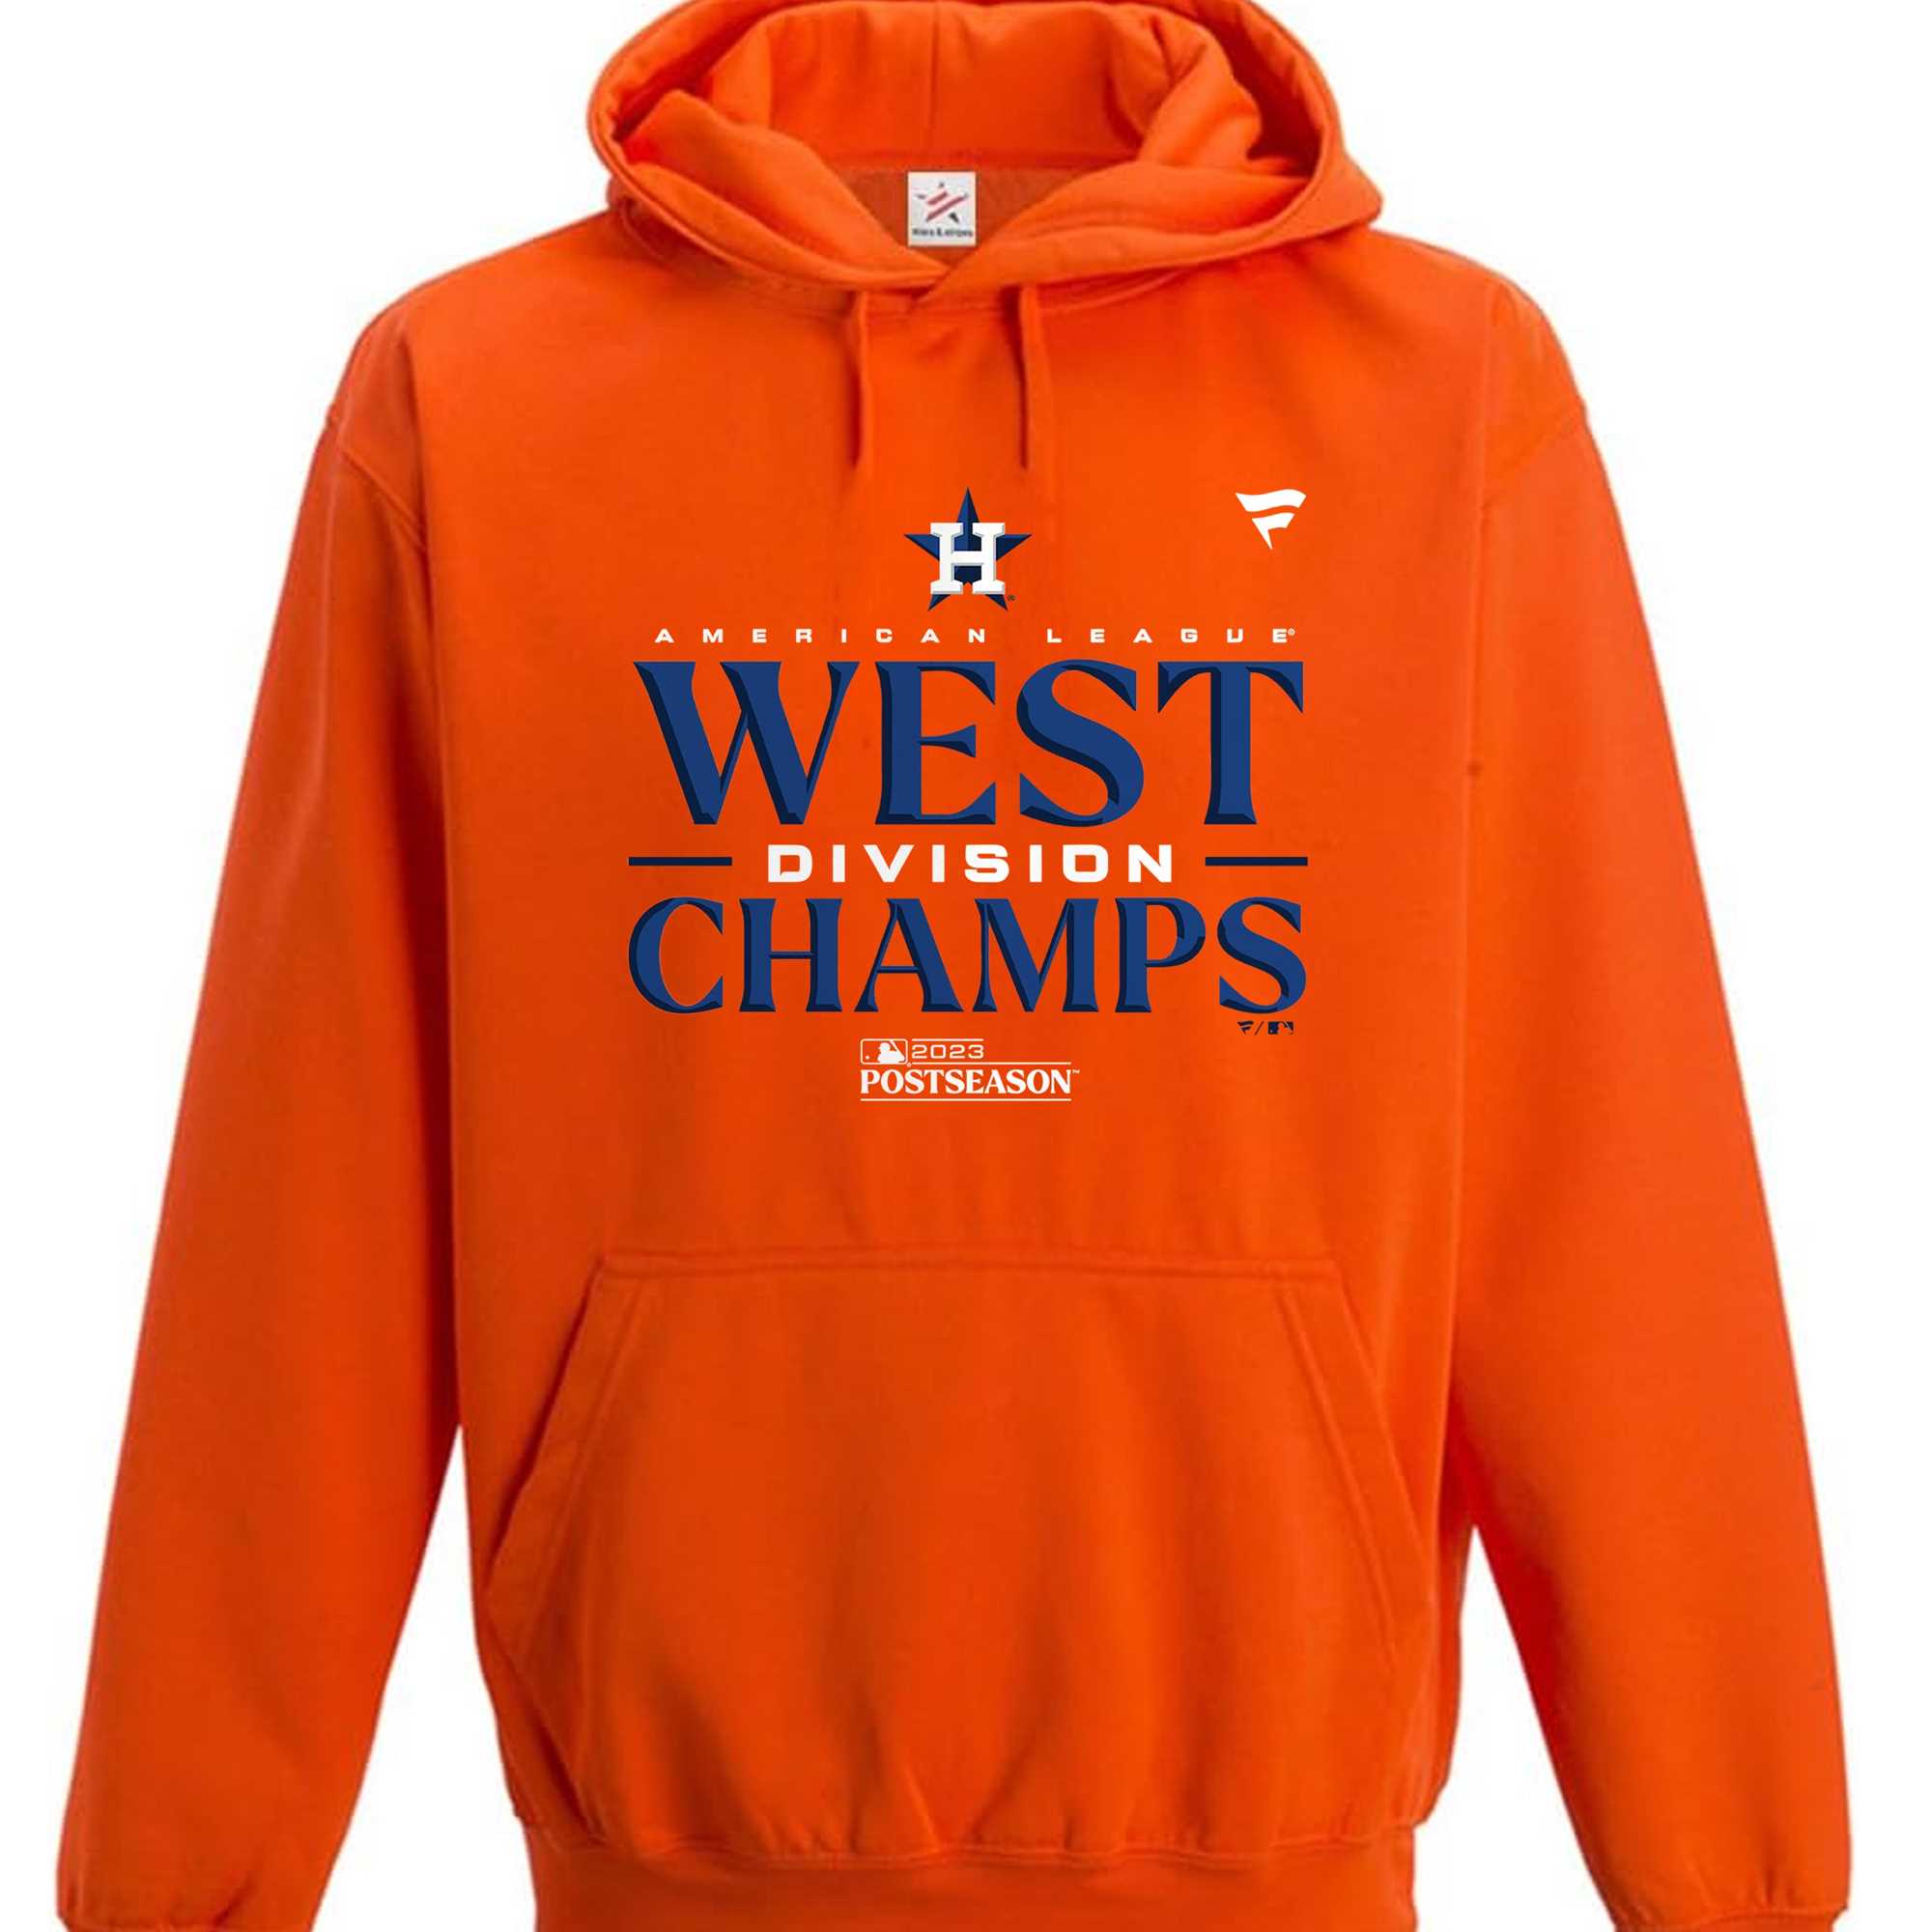 Houston Astros Al West Division Champions 2023 T-shirt